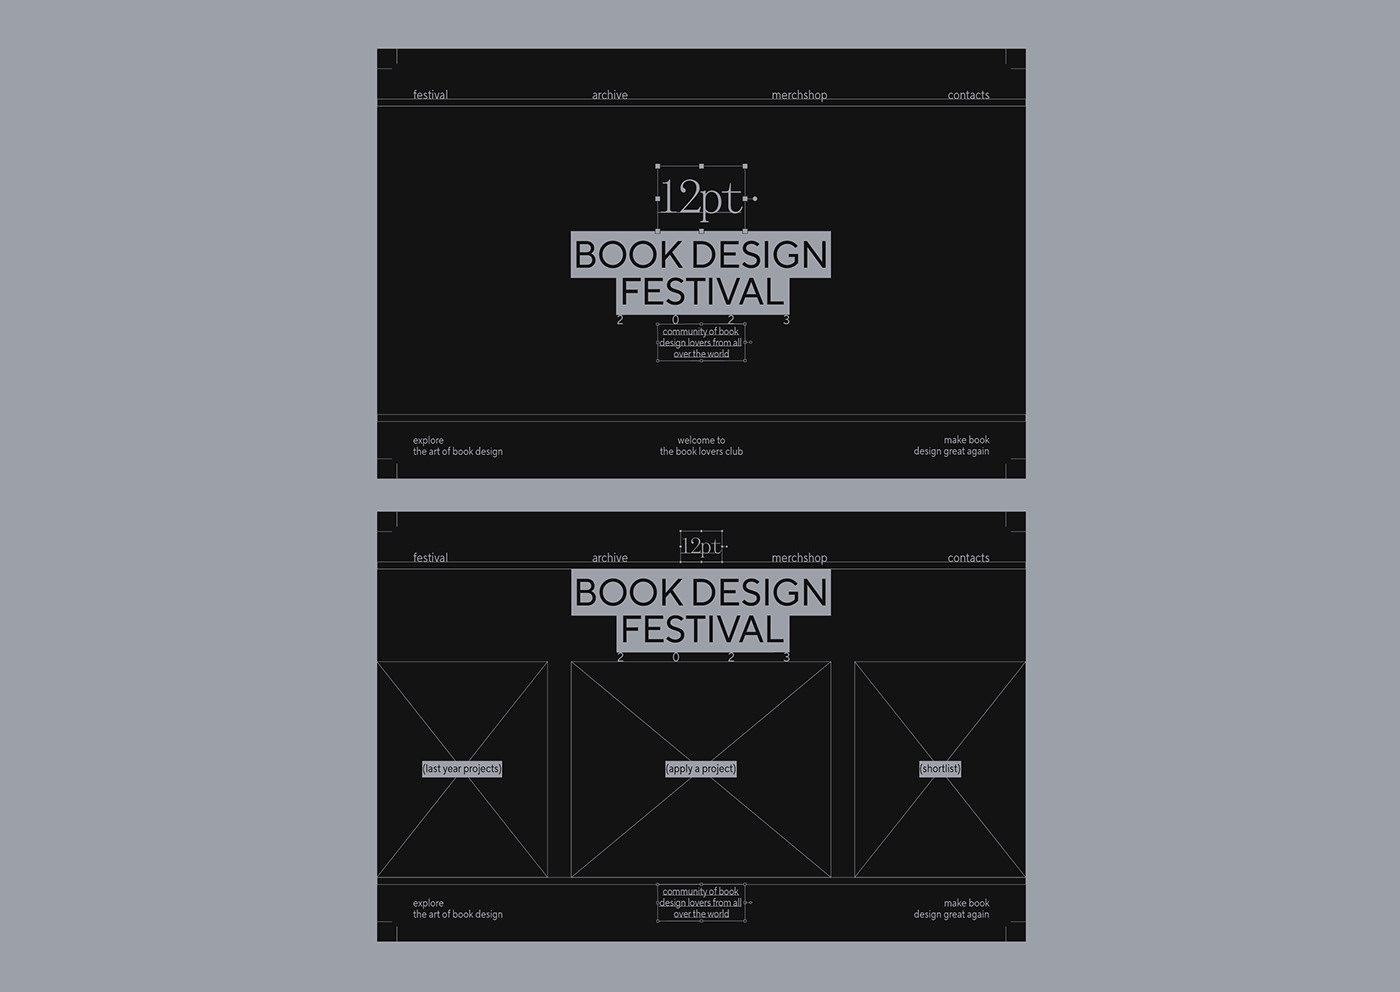 festival brand identity book design